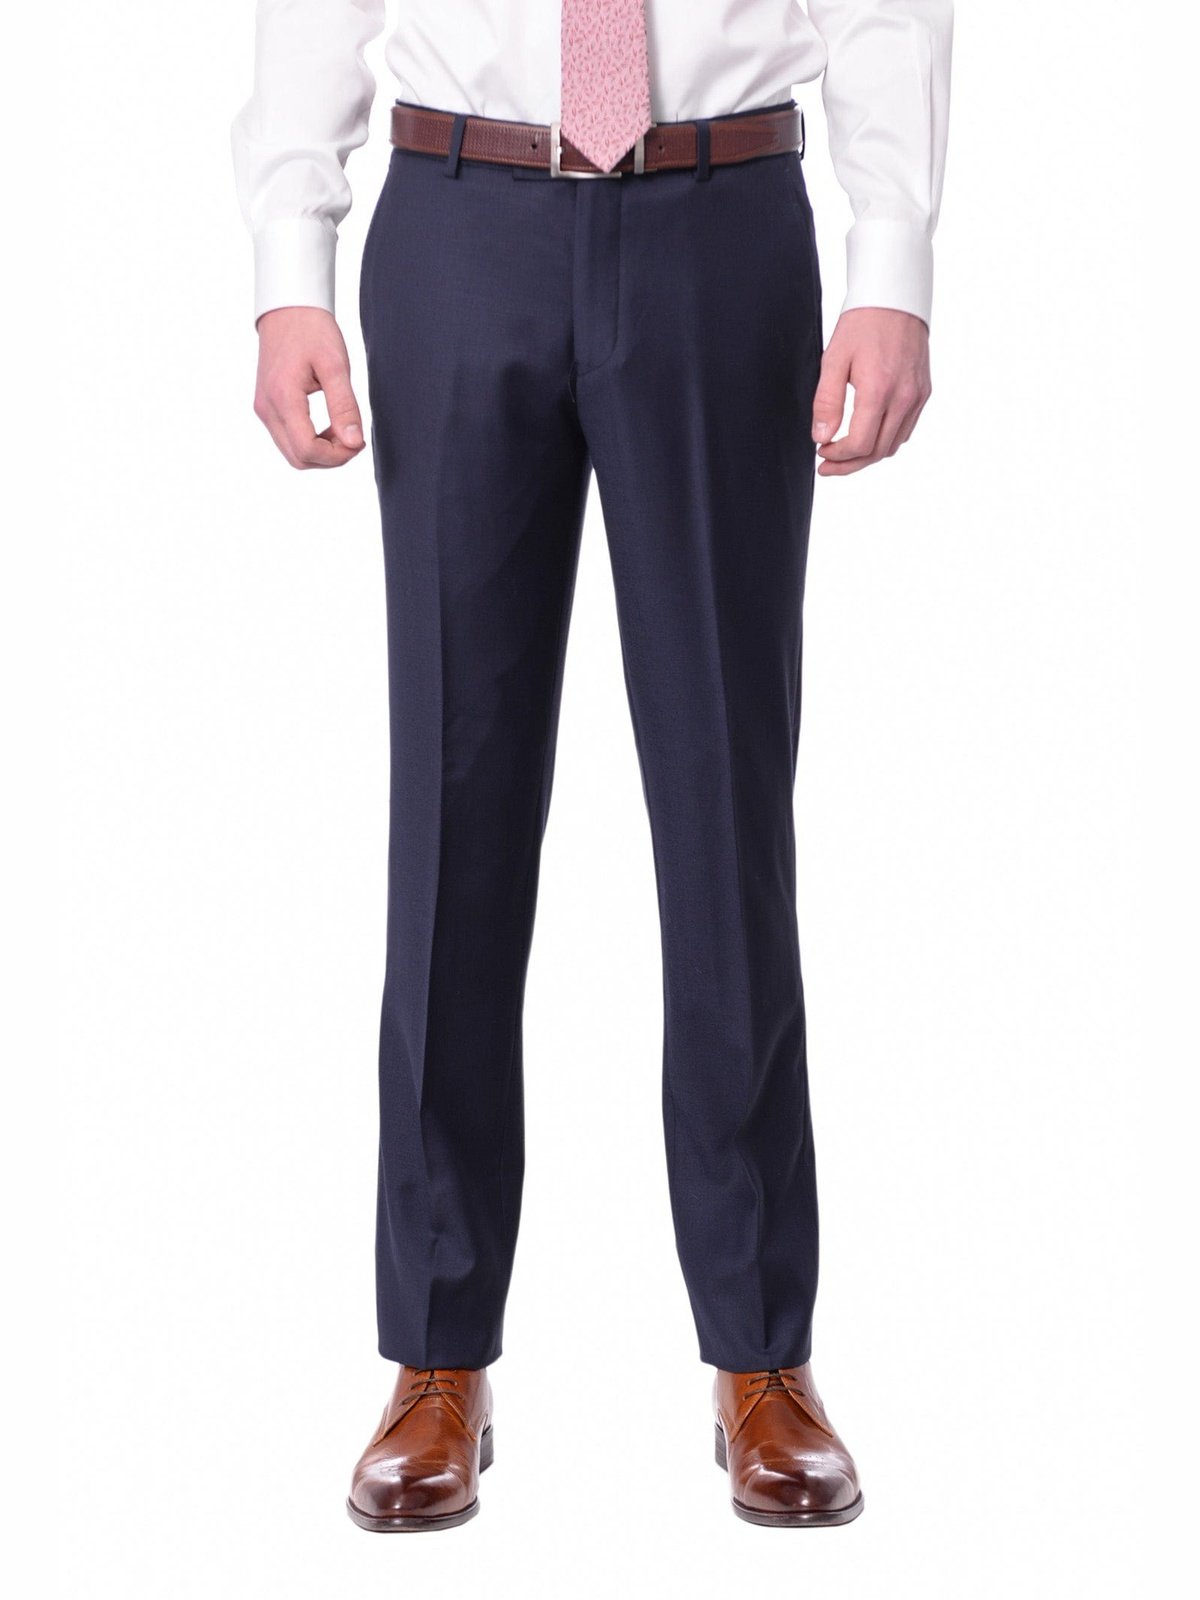 Men's Herringbone Tweed Wool Blend Trousers Casual Retro Slim Pleated Suit  Pants | eBay